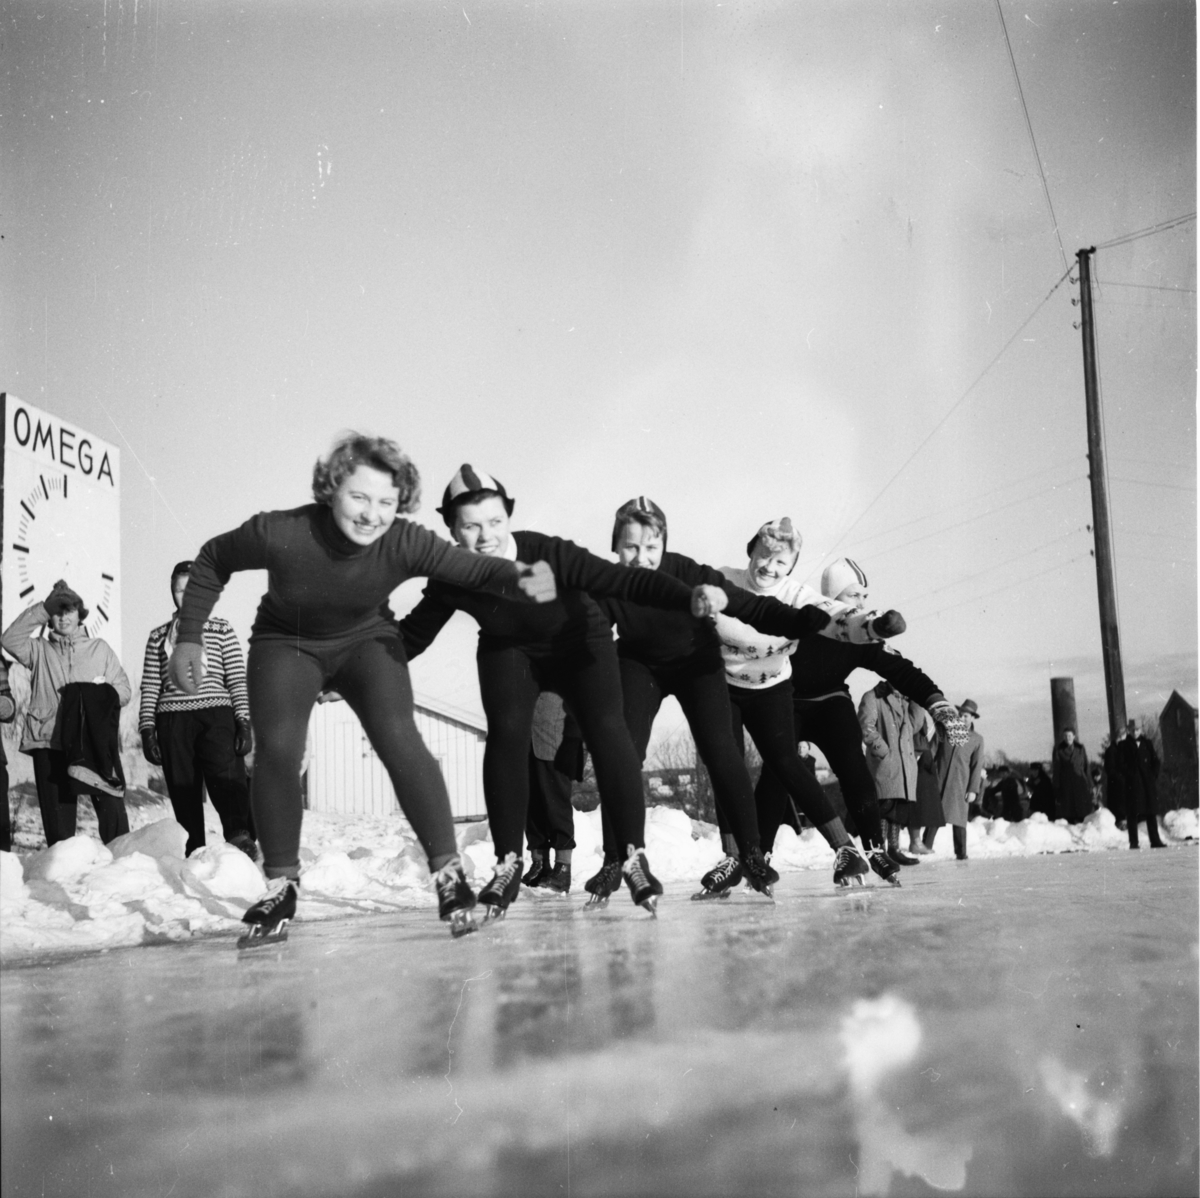 Vardens arkiv. "Skøyteløp på Herkules"  31.01.1954